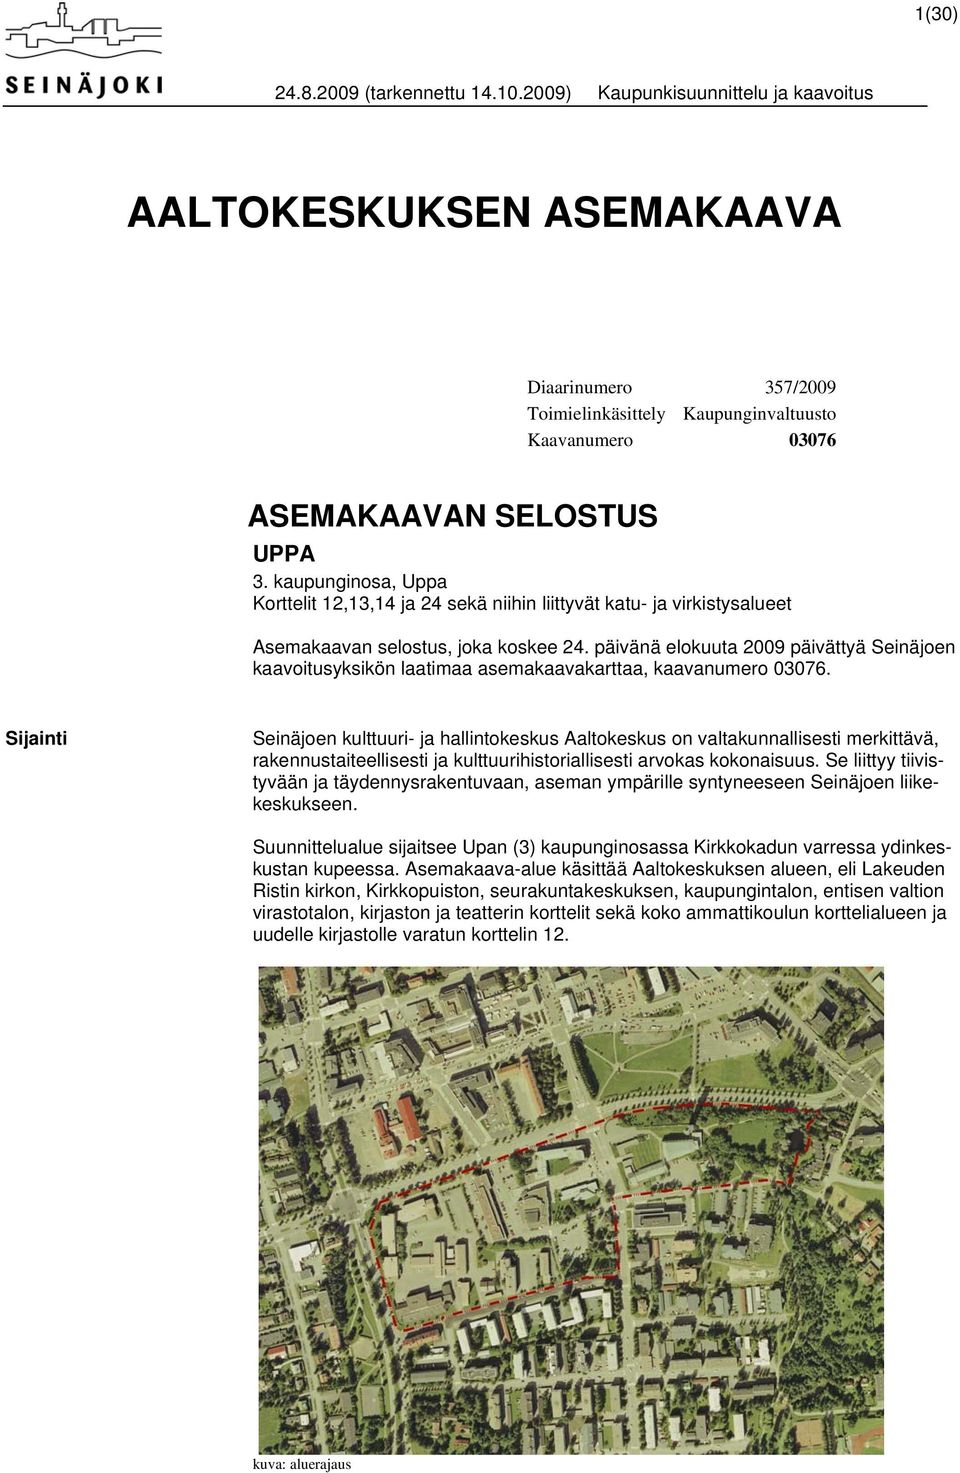 päivänä elokuuta 2009 päivättyä Seinäjoen kaavoitusyksikön laatimaa asemakaavakarttaa, kaavanumero 03076.